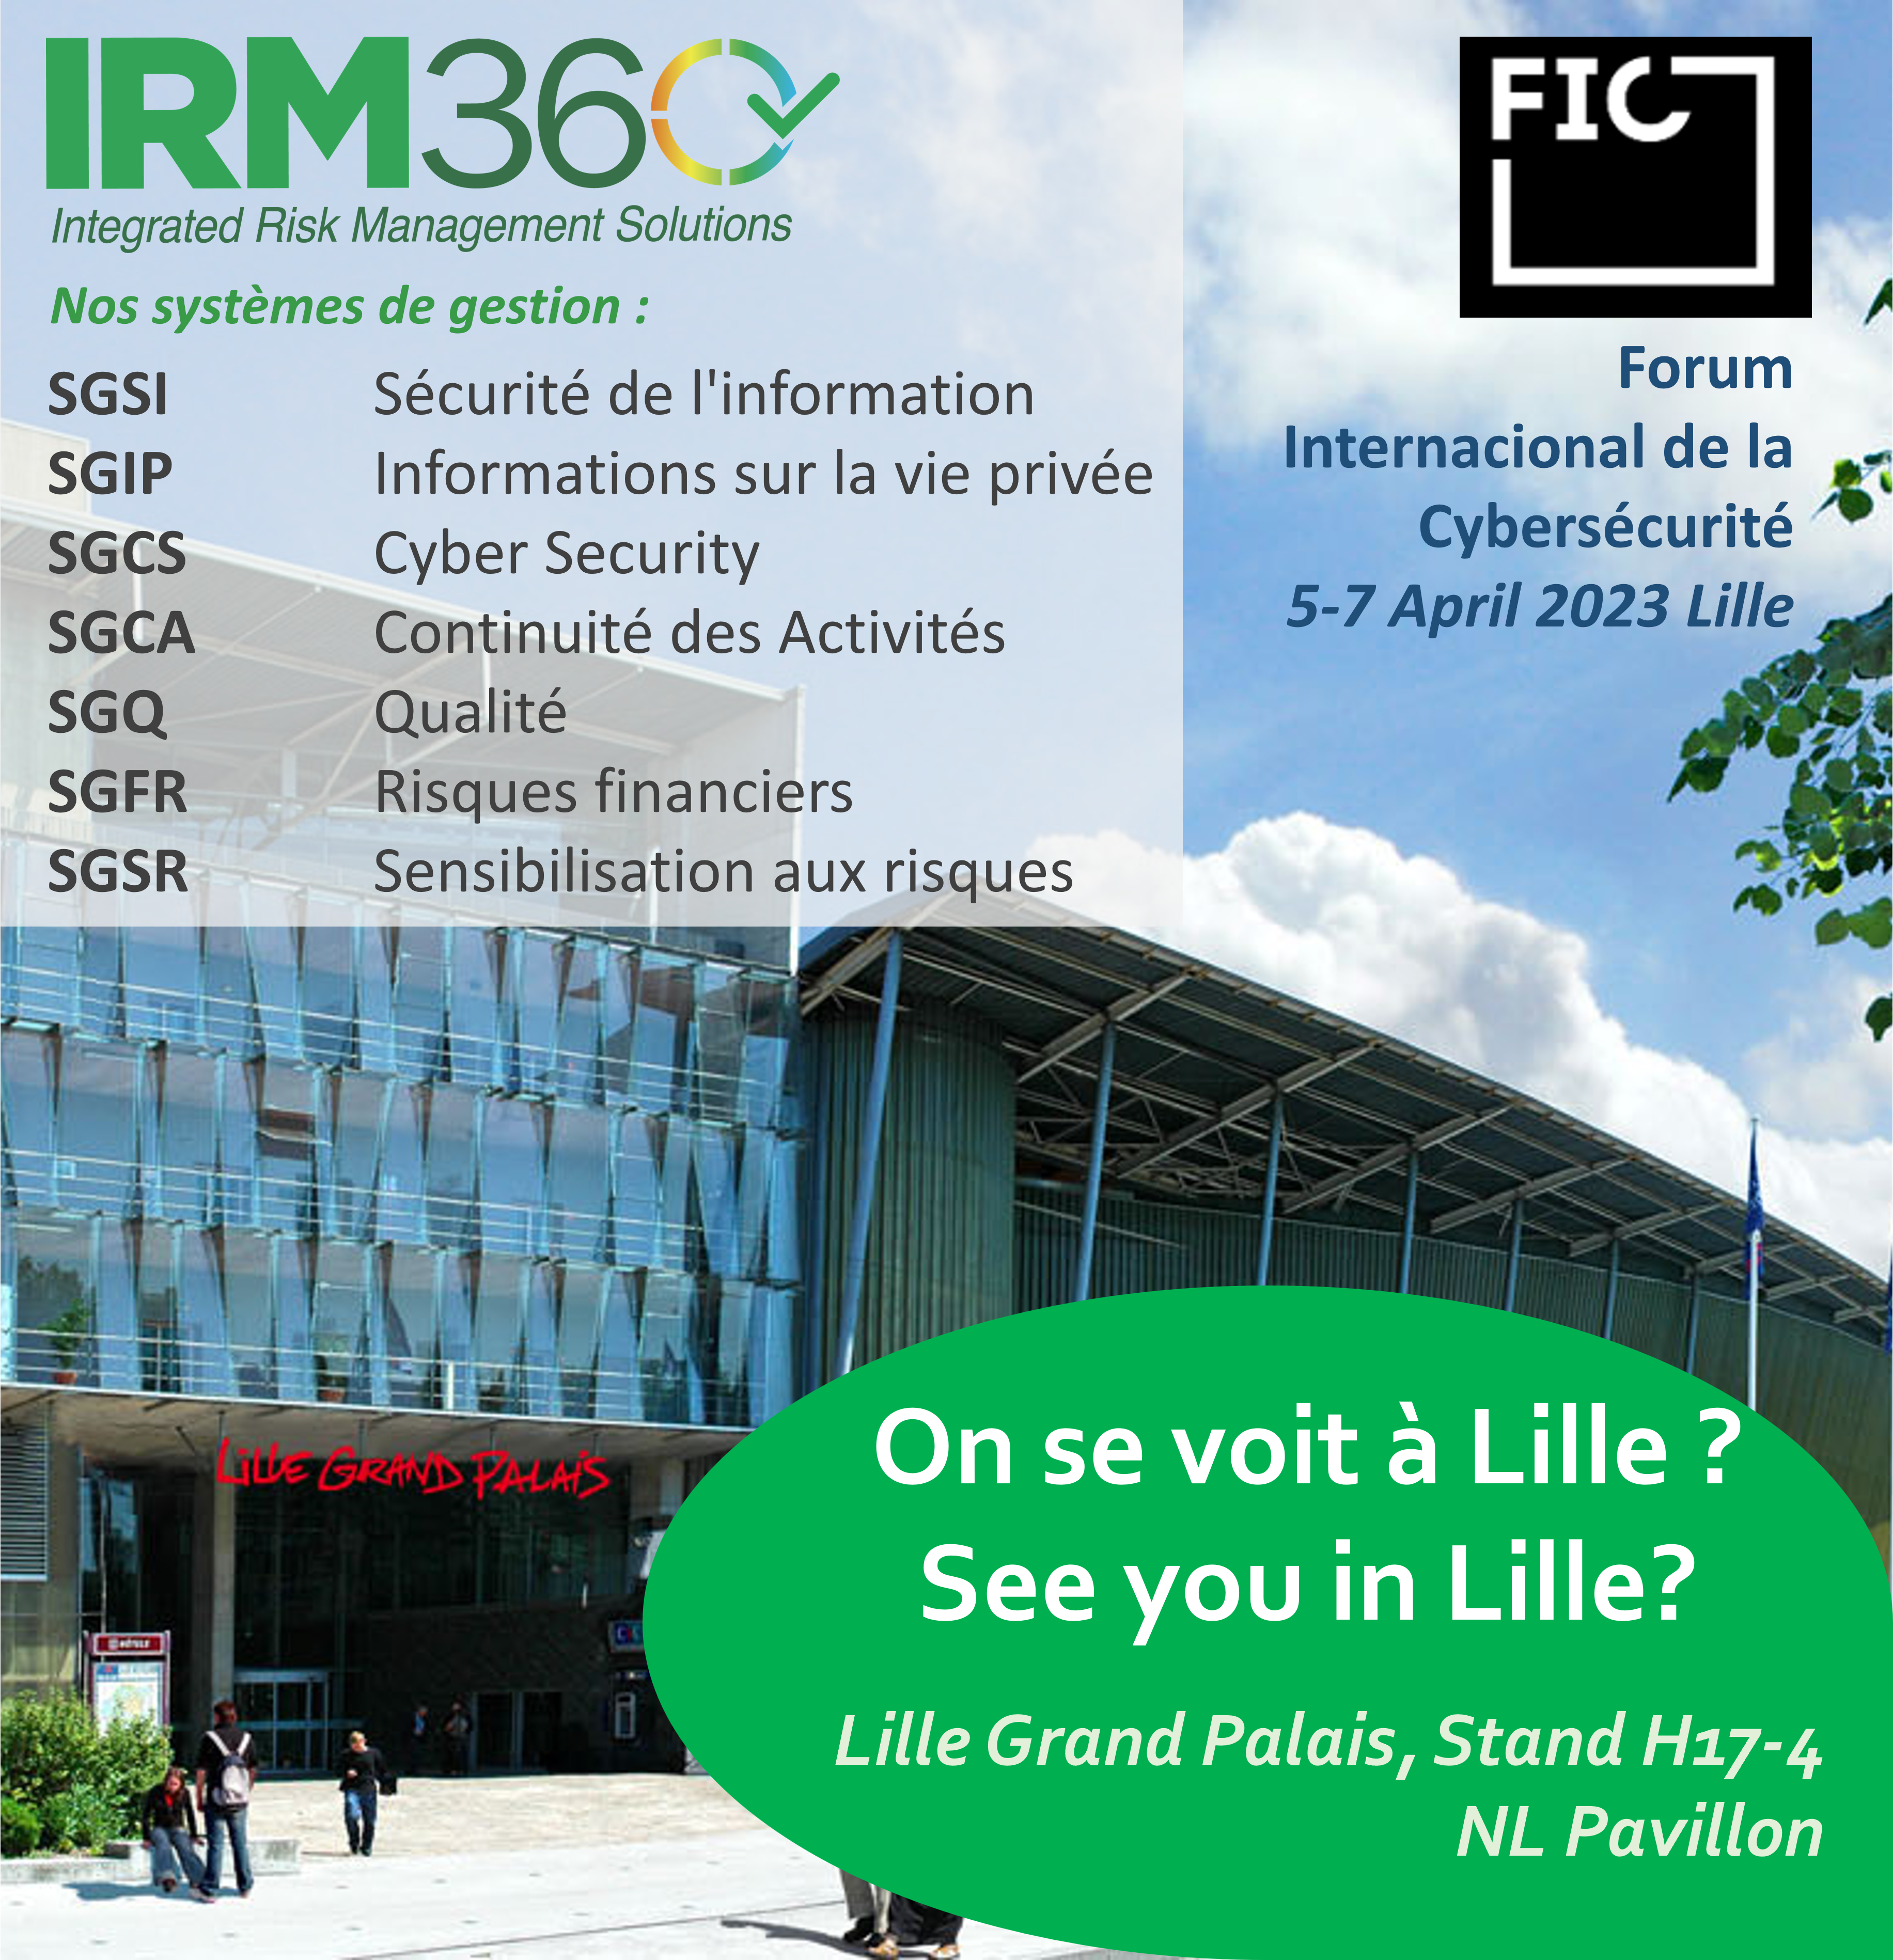 IRM360 präsentiert sich auf der FIC in Lille 